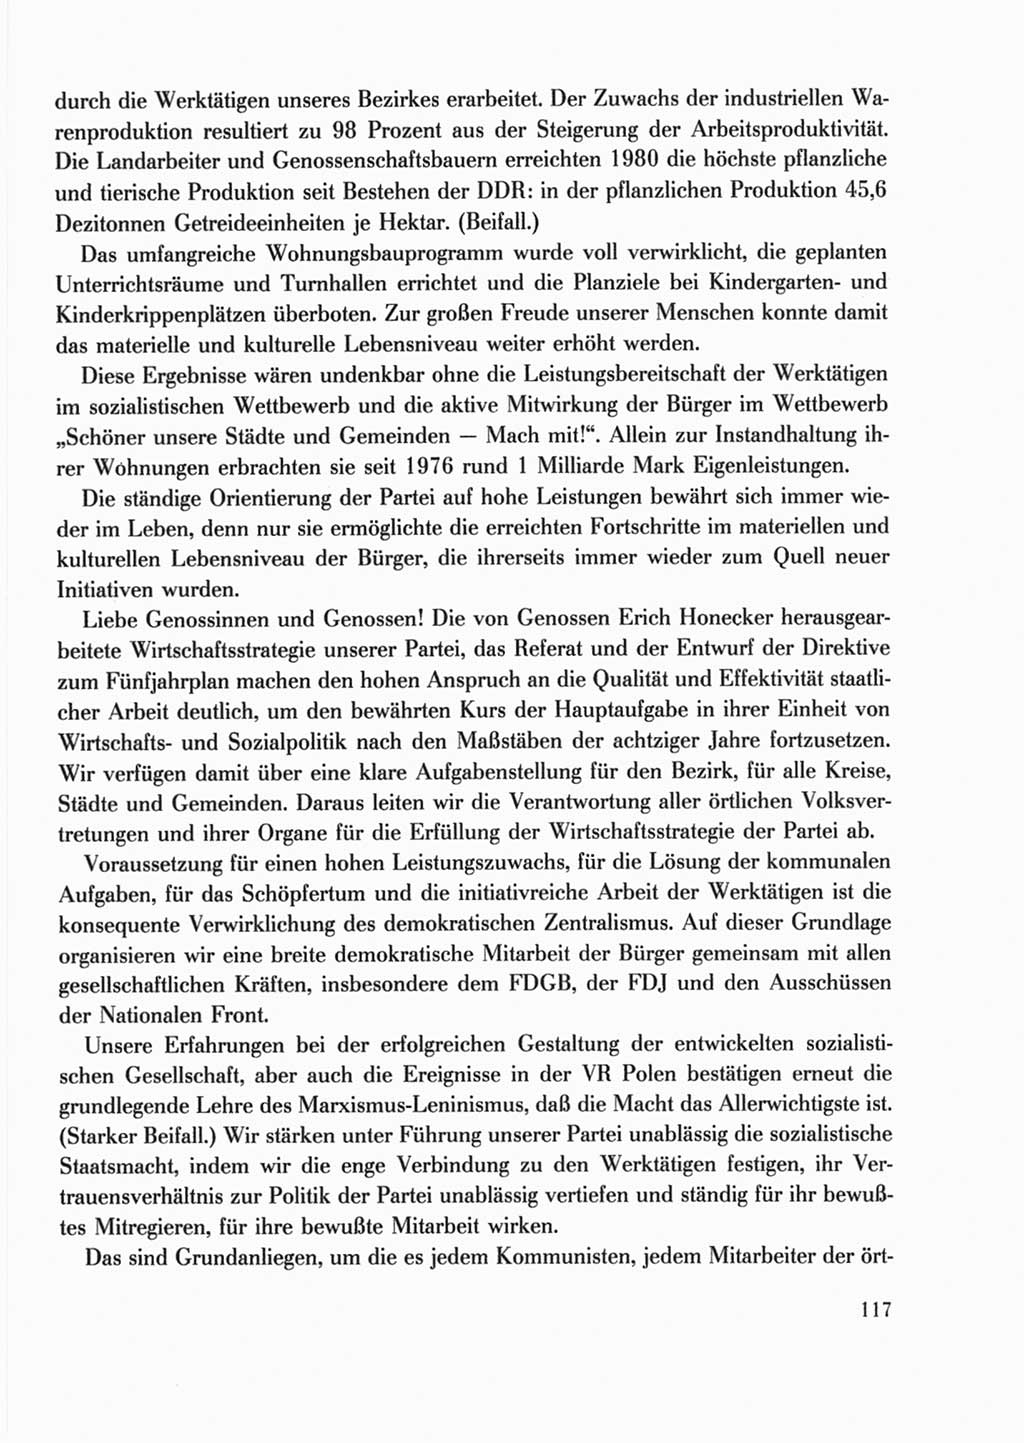 Protokoll der Verhandlungen des Ⅹ. Parteitages der Sozialistischen Einheitspartei Deutschlands (SED) [Deutsche Demokratische Republik (DDR)] 1981, Band 2, Seite 117 (Prot. Verh. Ⅹ. PT SED DDR 1981, Bd. 2, S. 117)